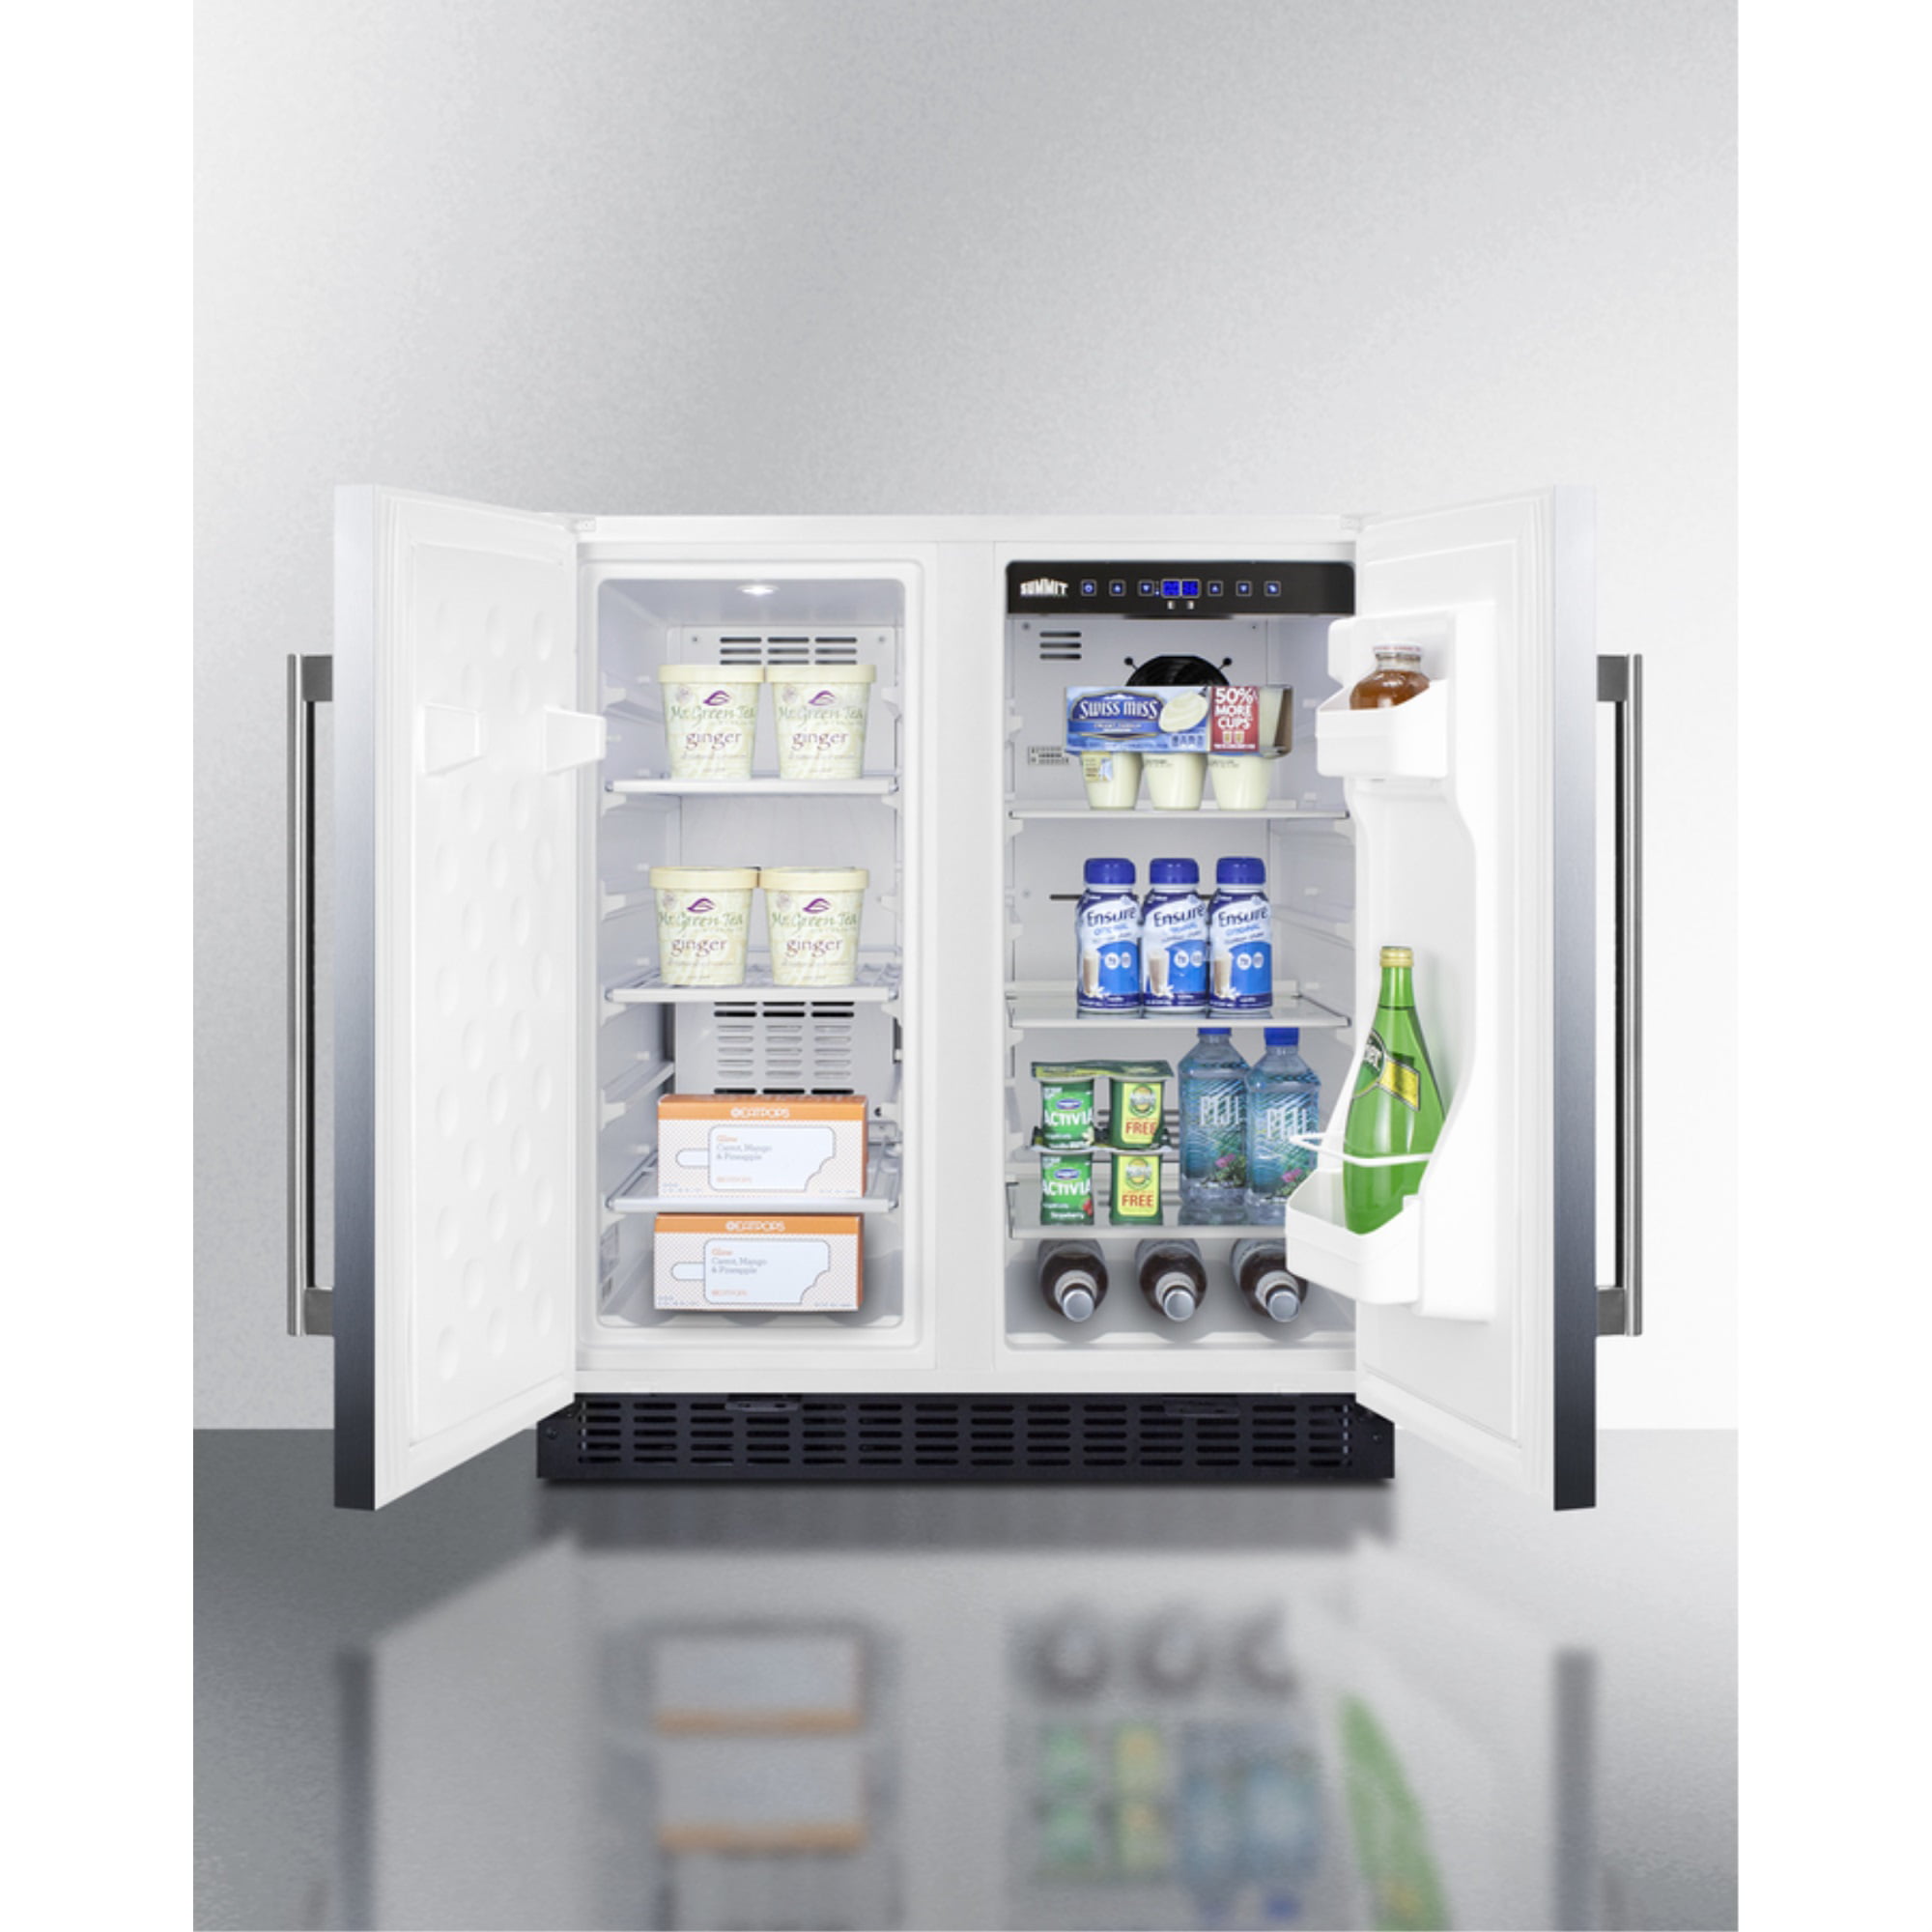 Summit FFRF3075WCSS 30 Wide Built-In Refrigerator-Freezer